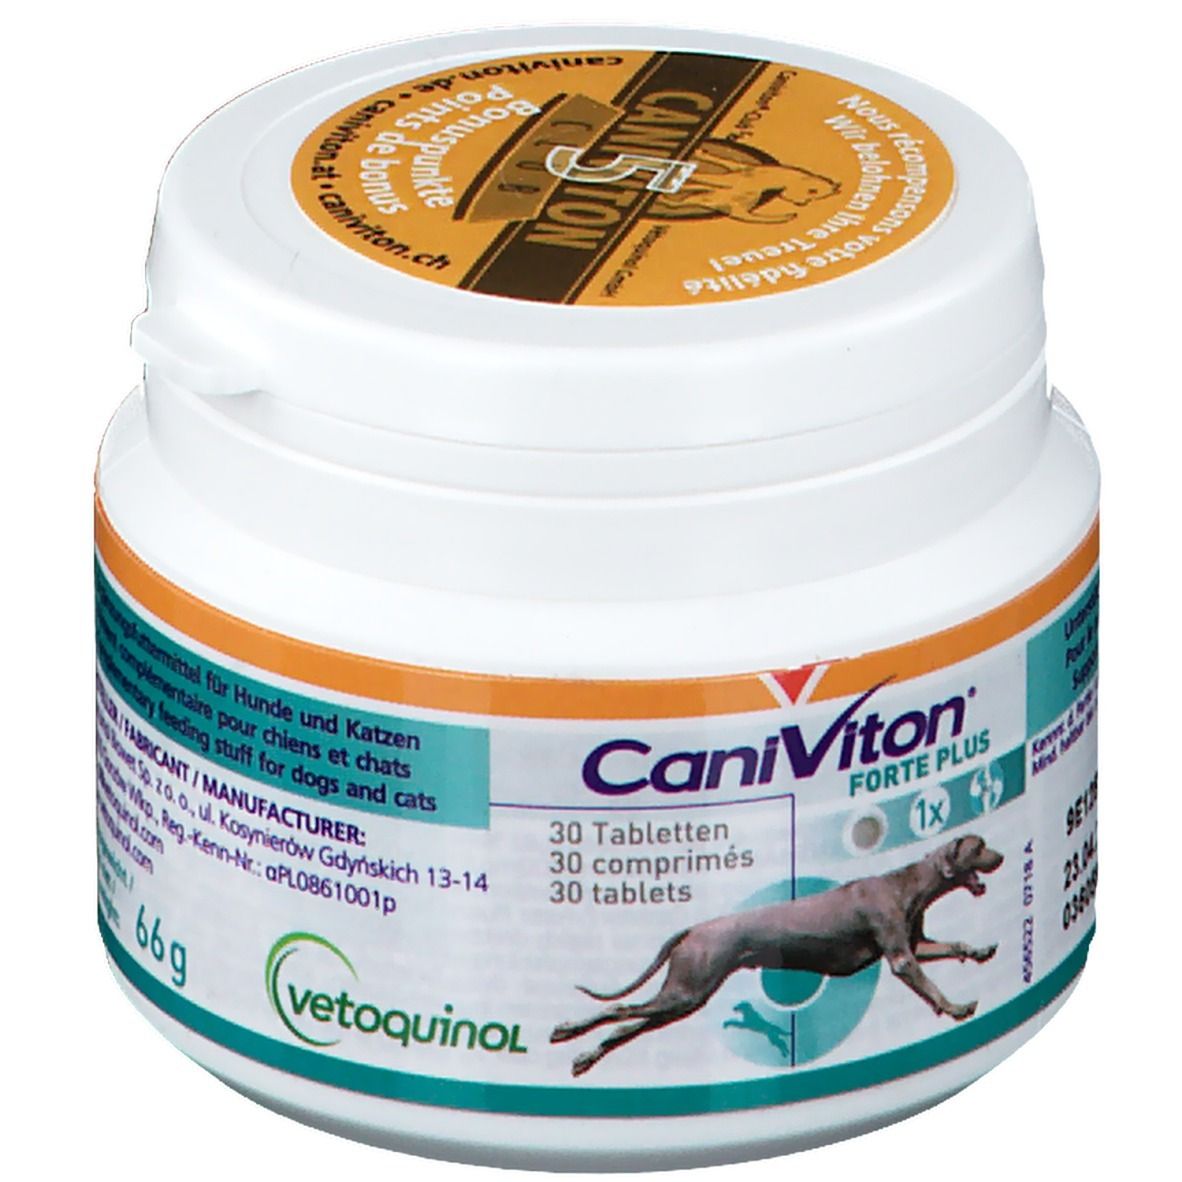 CaniViton® Forte Plus